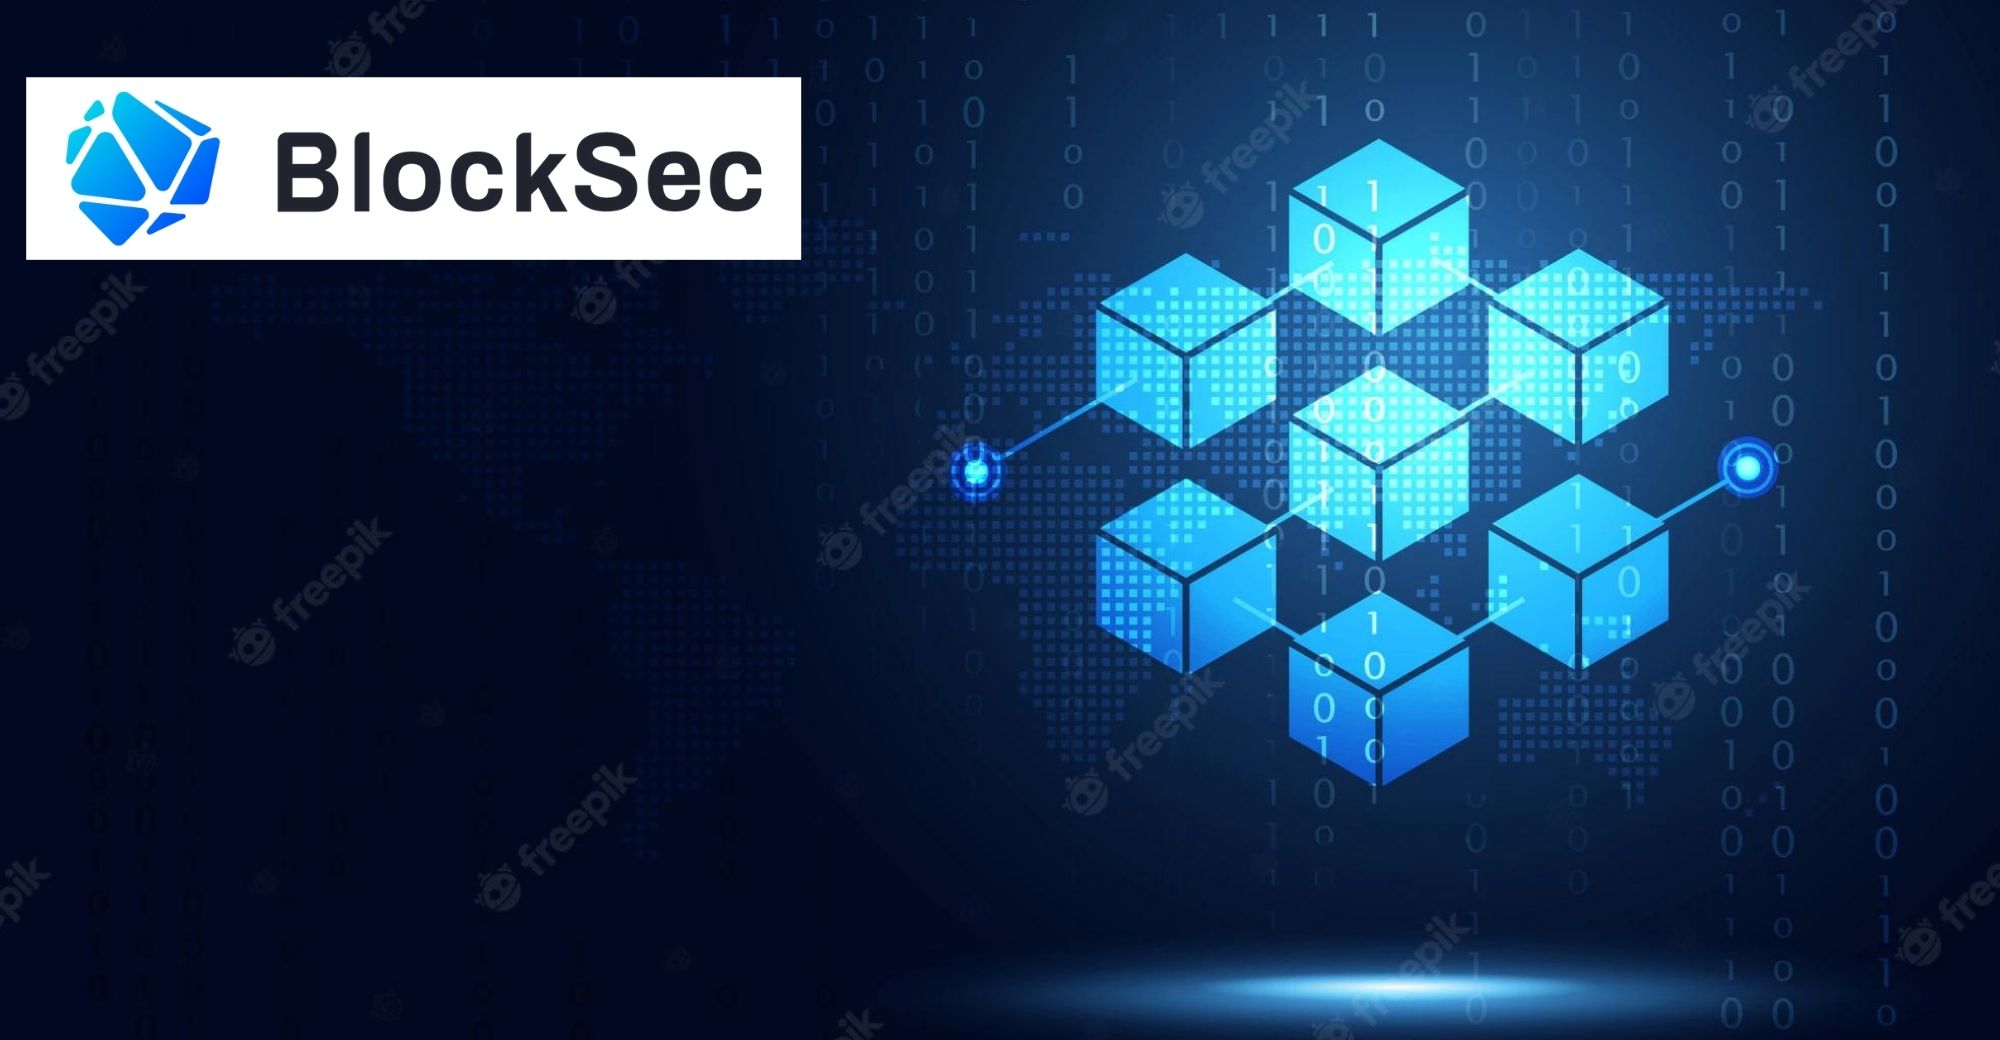 BlockSec, sebuah syarikat keselamatan seni bina blockchain, menyelesaikan pusingan pembiayaan malaikat +